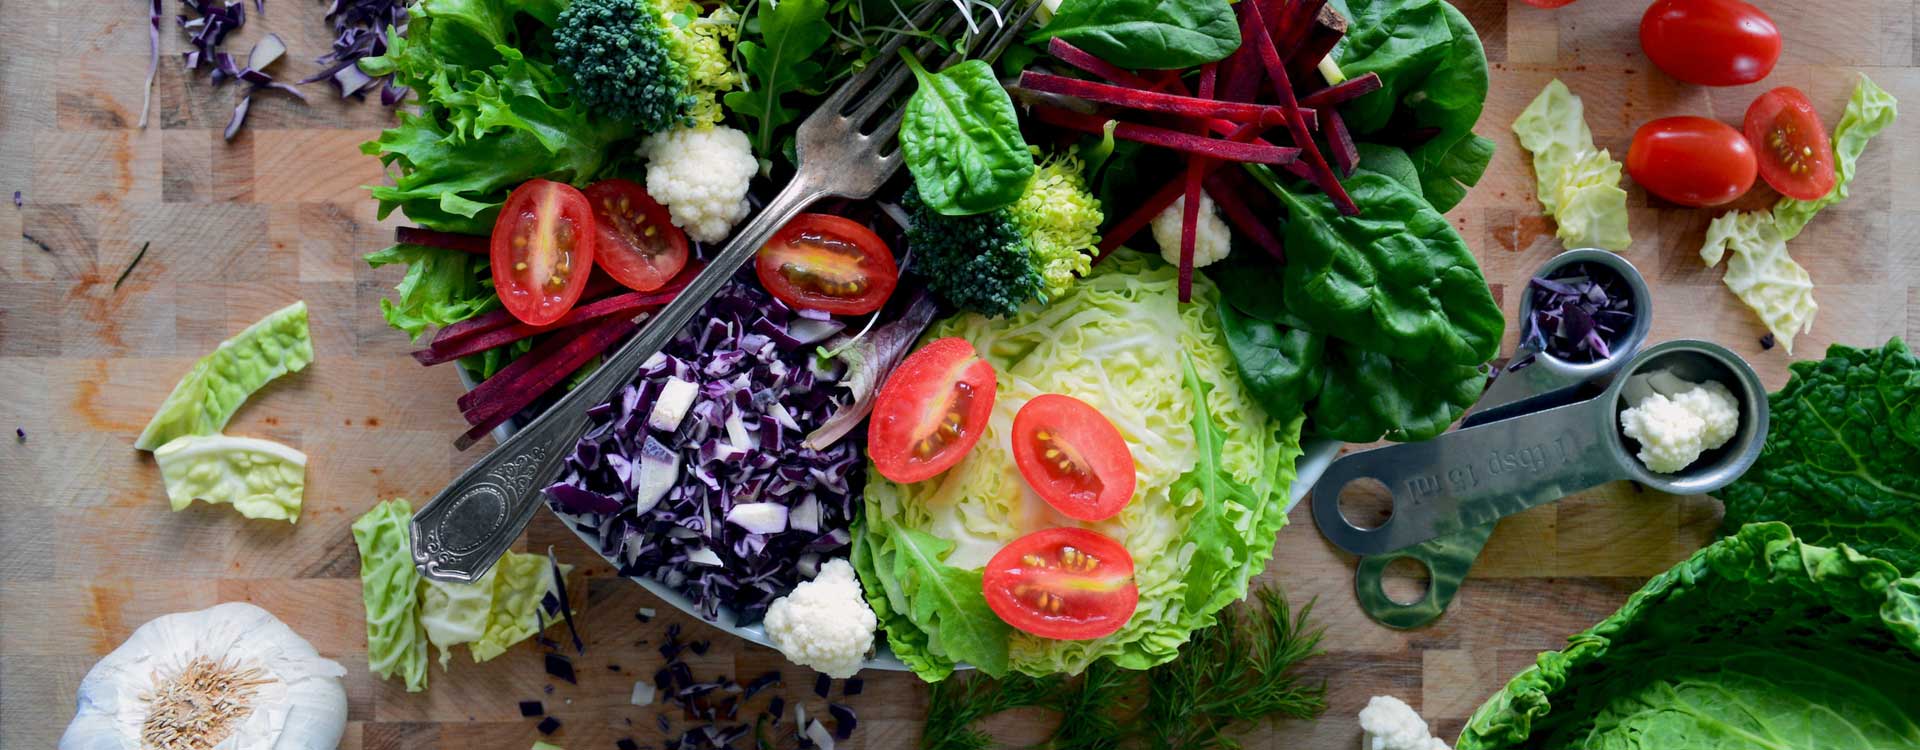 Energiedichte – Gemüse und Salat